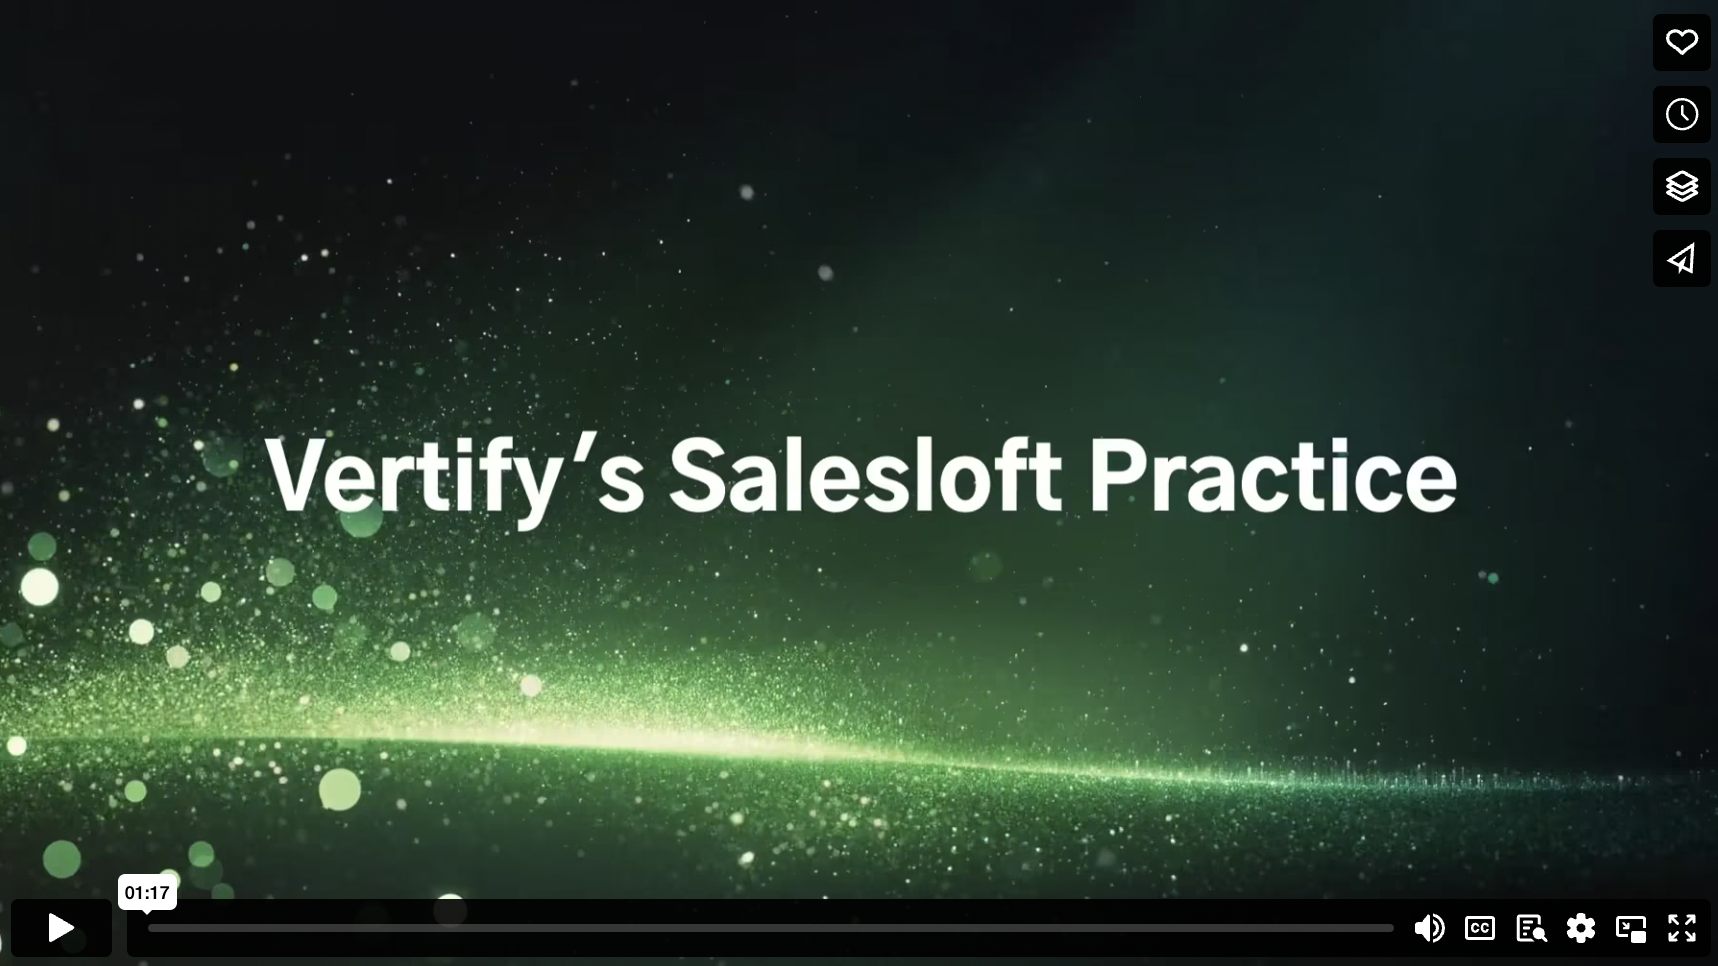 Vertify Salesloft Practice